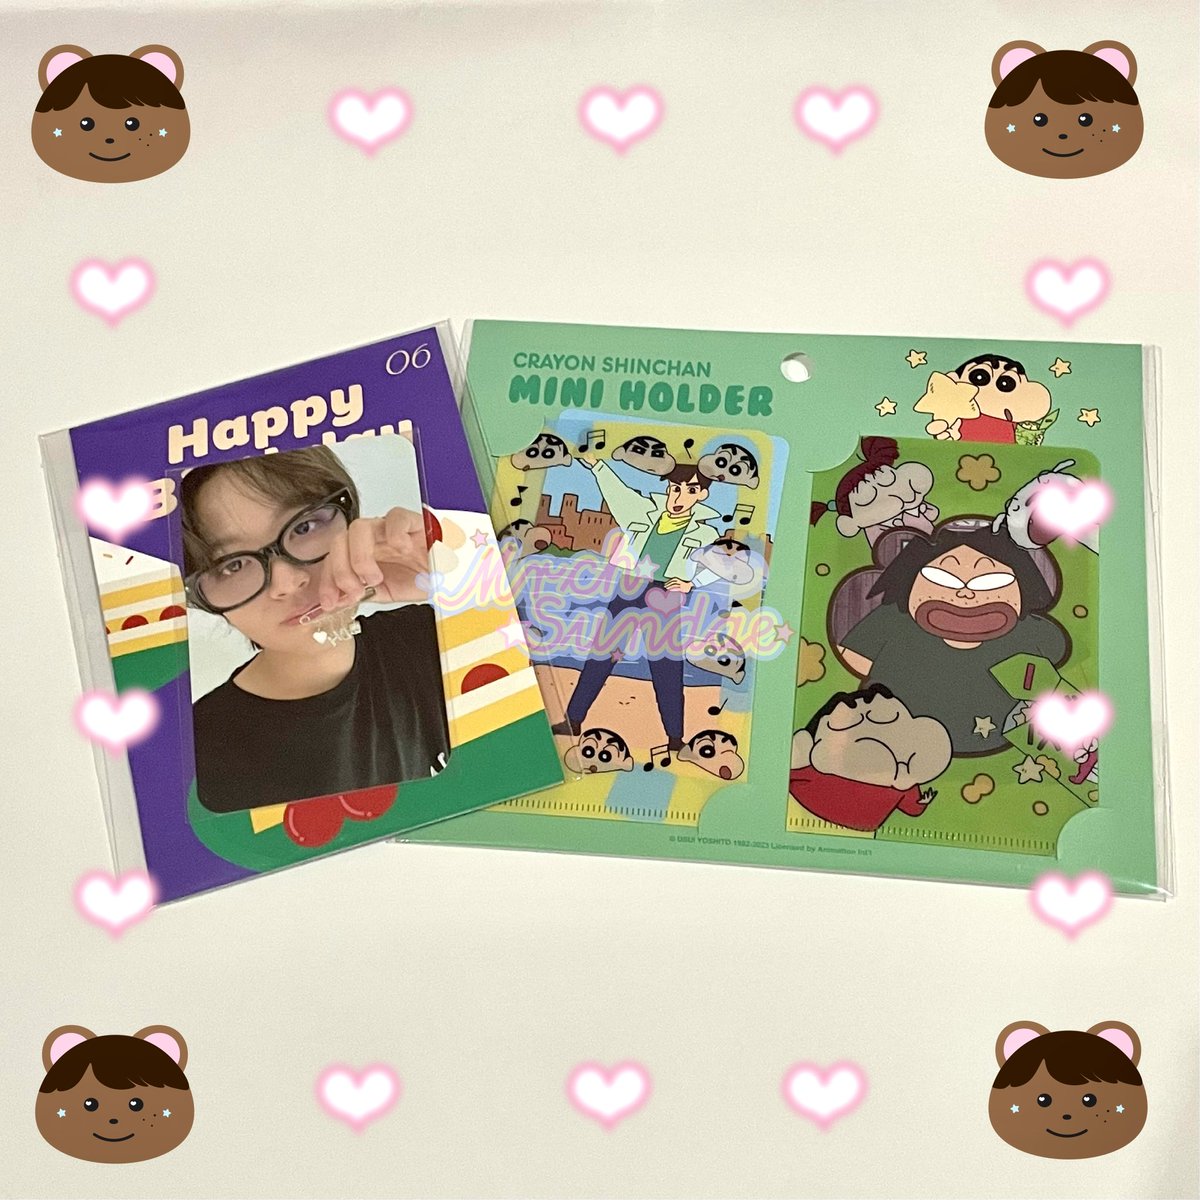 🌻🤍해찬 생일 선물🤍🐻

haechan birthday card + shinchan mini holder 

รีทวิตอย่างเดียว+สุ่มวันเสาร์ 2ทุ่มค่ะ สุ่มแล้วจะแท้กไปนะคะ🍀🧸

#기다려왔잖니_쩨고의날_해찬생일
#HAPPYHAECHANDAY
#OKAYCUTItsHaechanDay